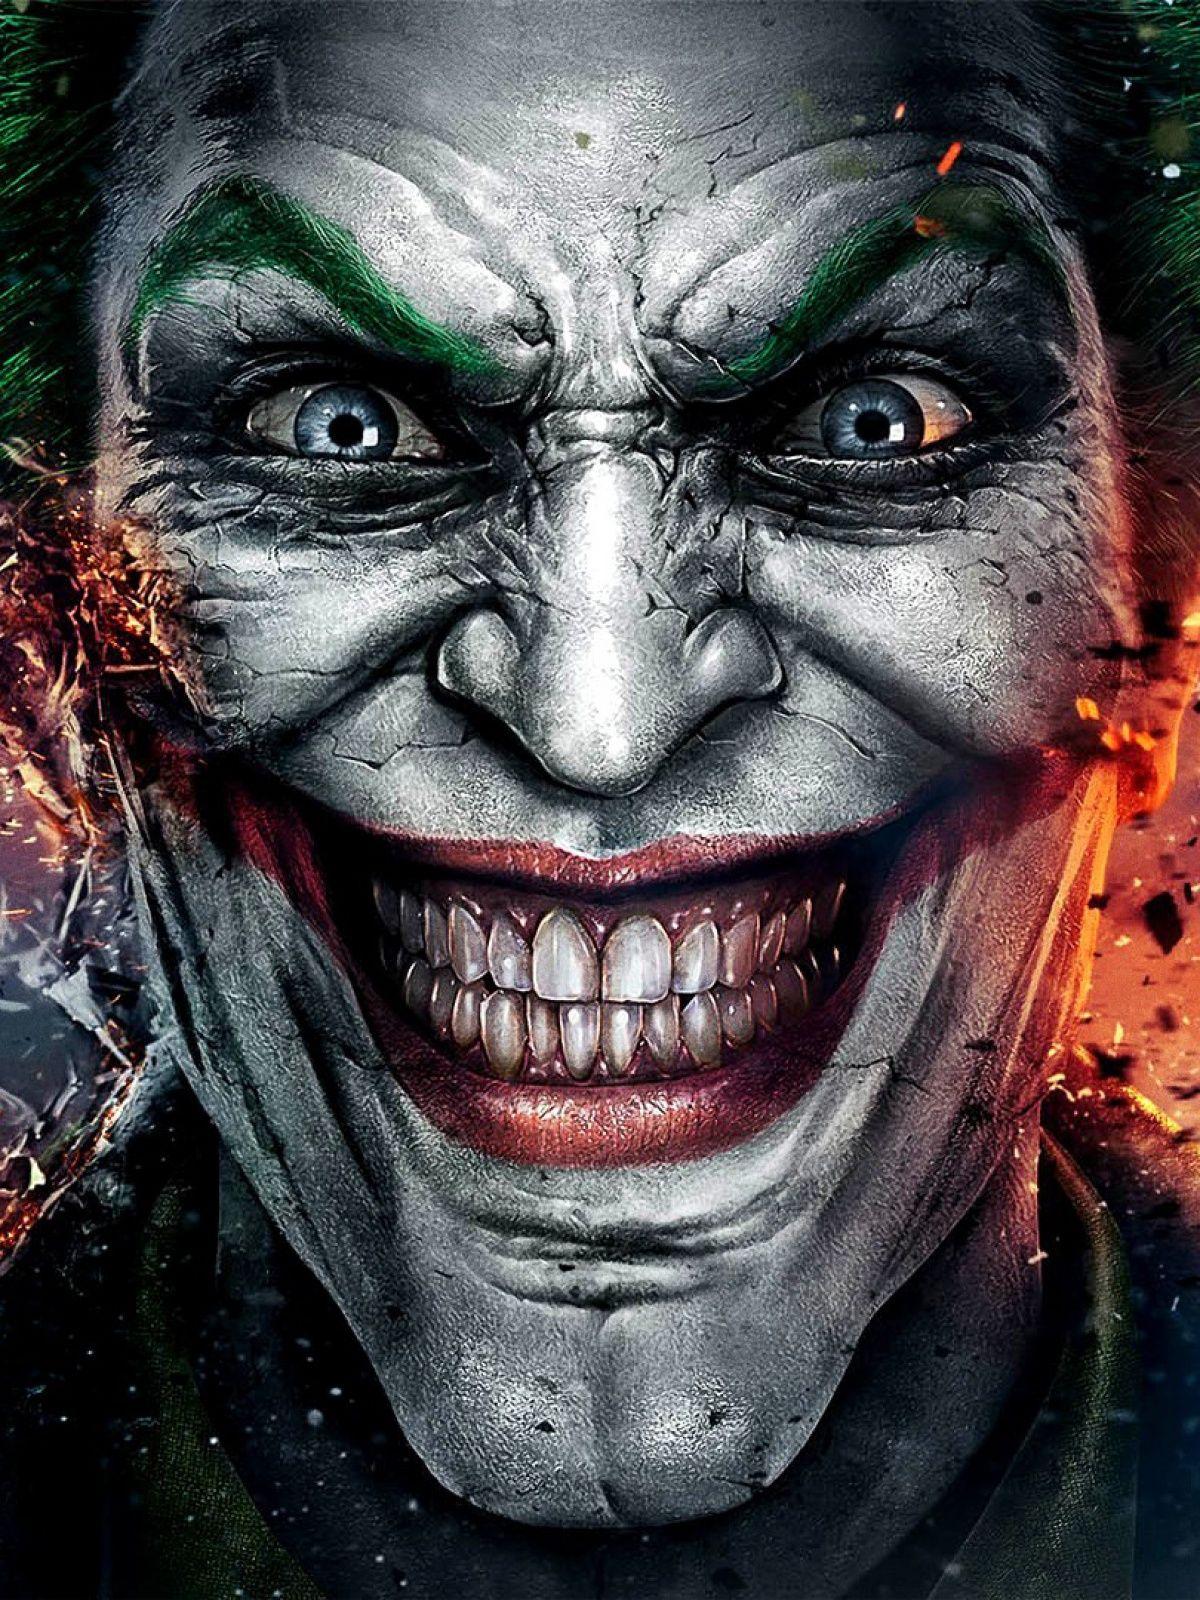 The Joker Mobile Wallpaper